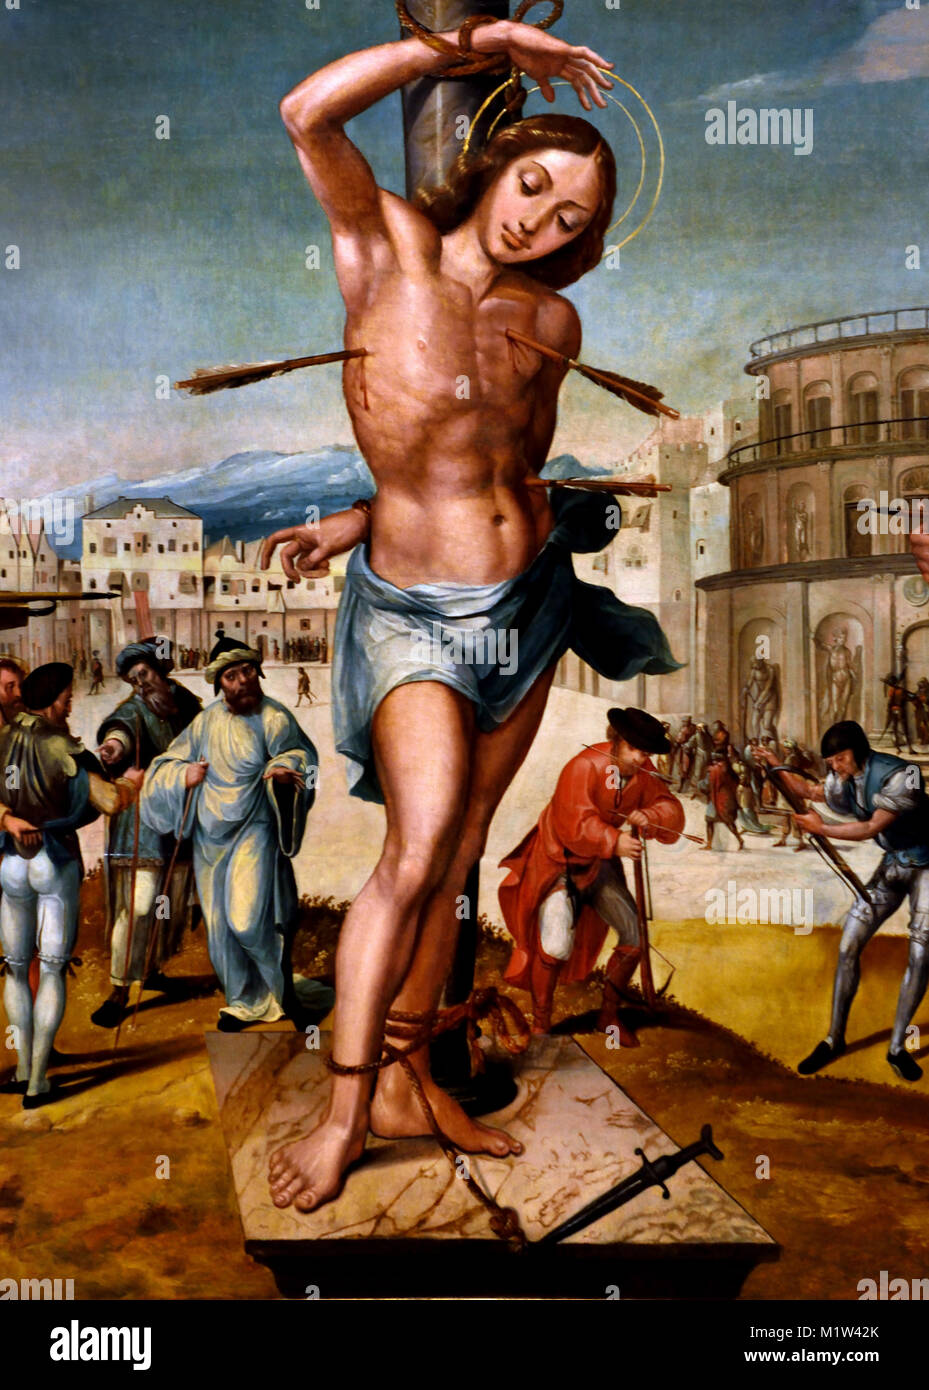 Il Martirio di San Sebastiano 1536 - 1538 Gregório Lopes (1490-1550) del xv secolo in Portogallo, portoghese ( Gregório López; Gregorio Lopez; Gregorio Lopes ) Foto Stock